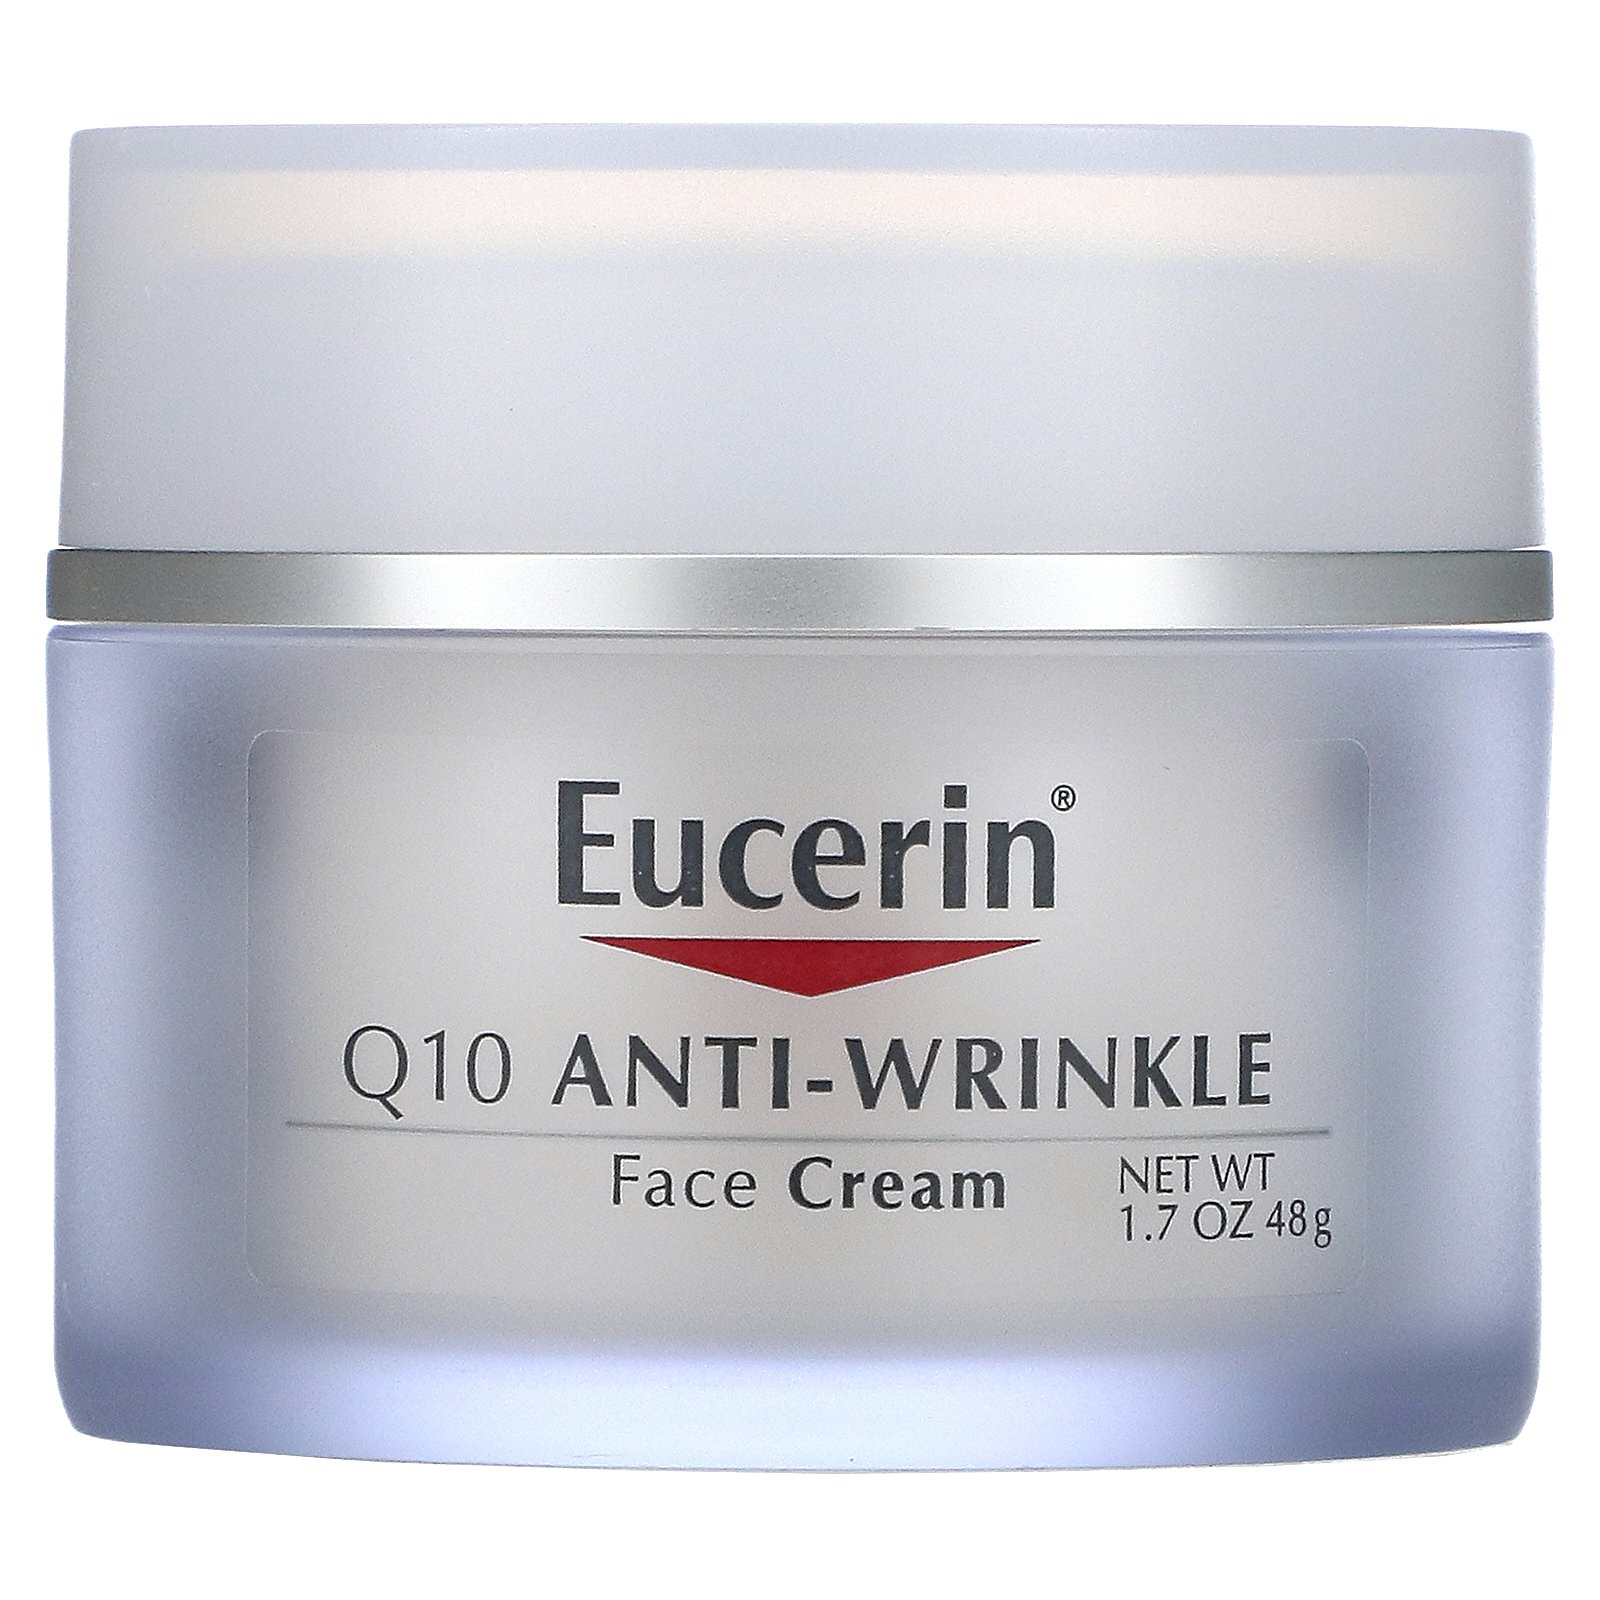 eucerin anti wrinkle night cream)